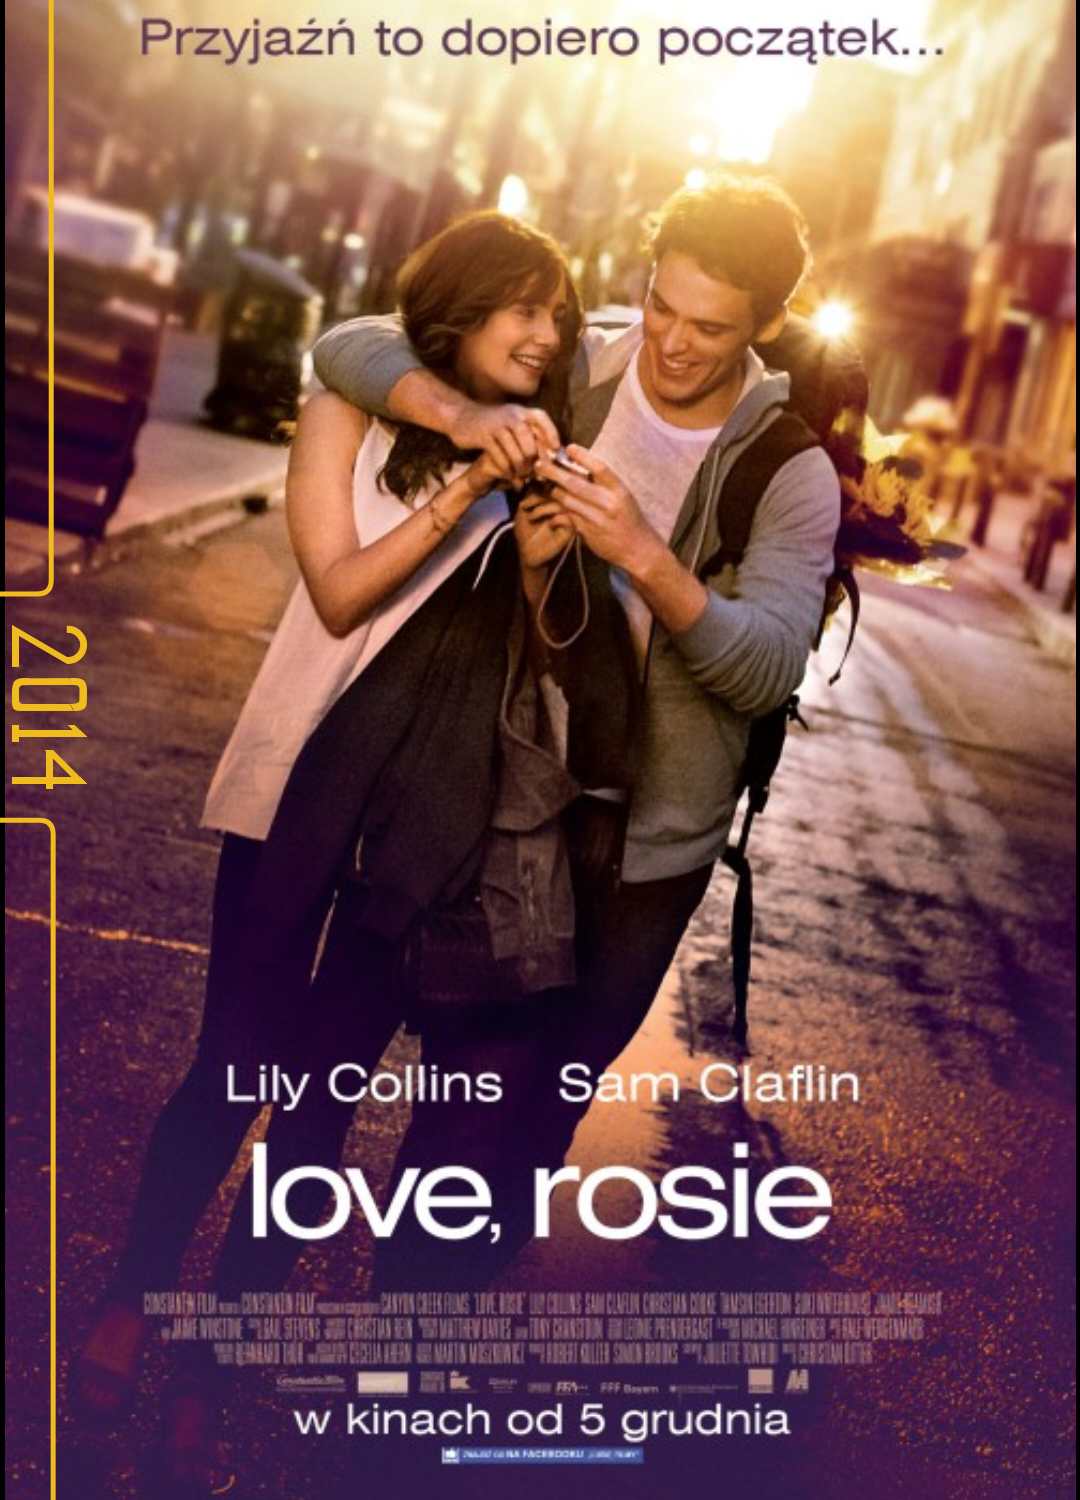 فیلم با عشق رزی Love, Rosie 2014 با زیرنویس فارسی چسبیده